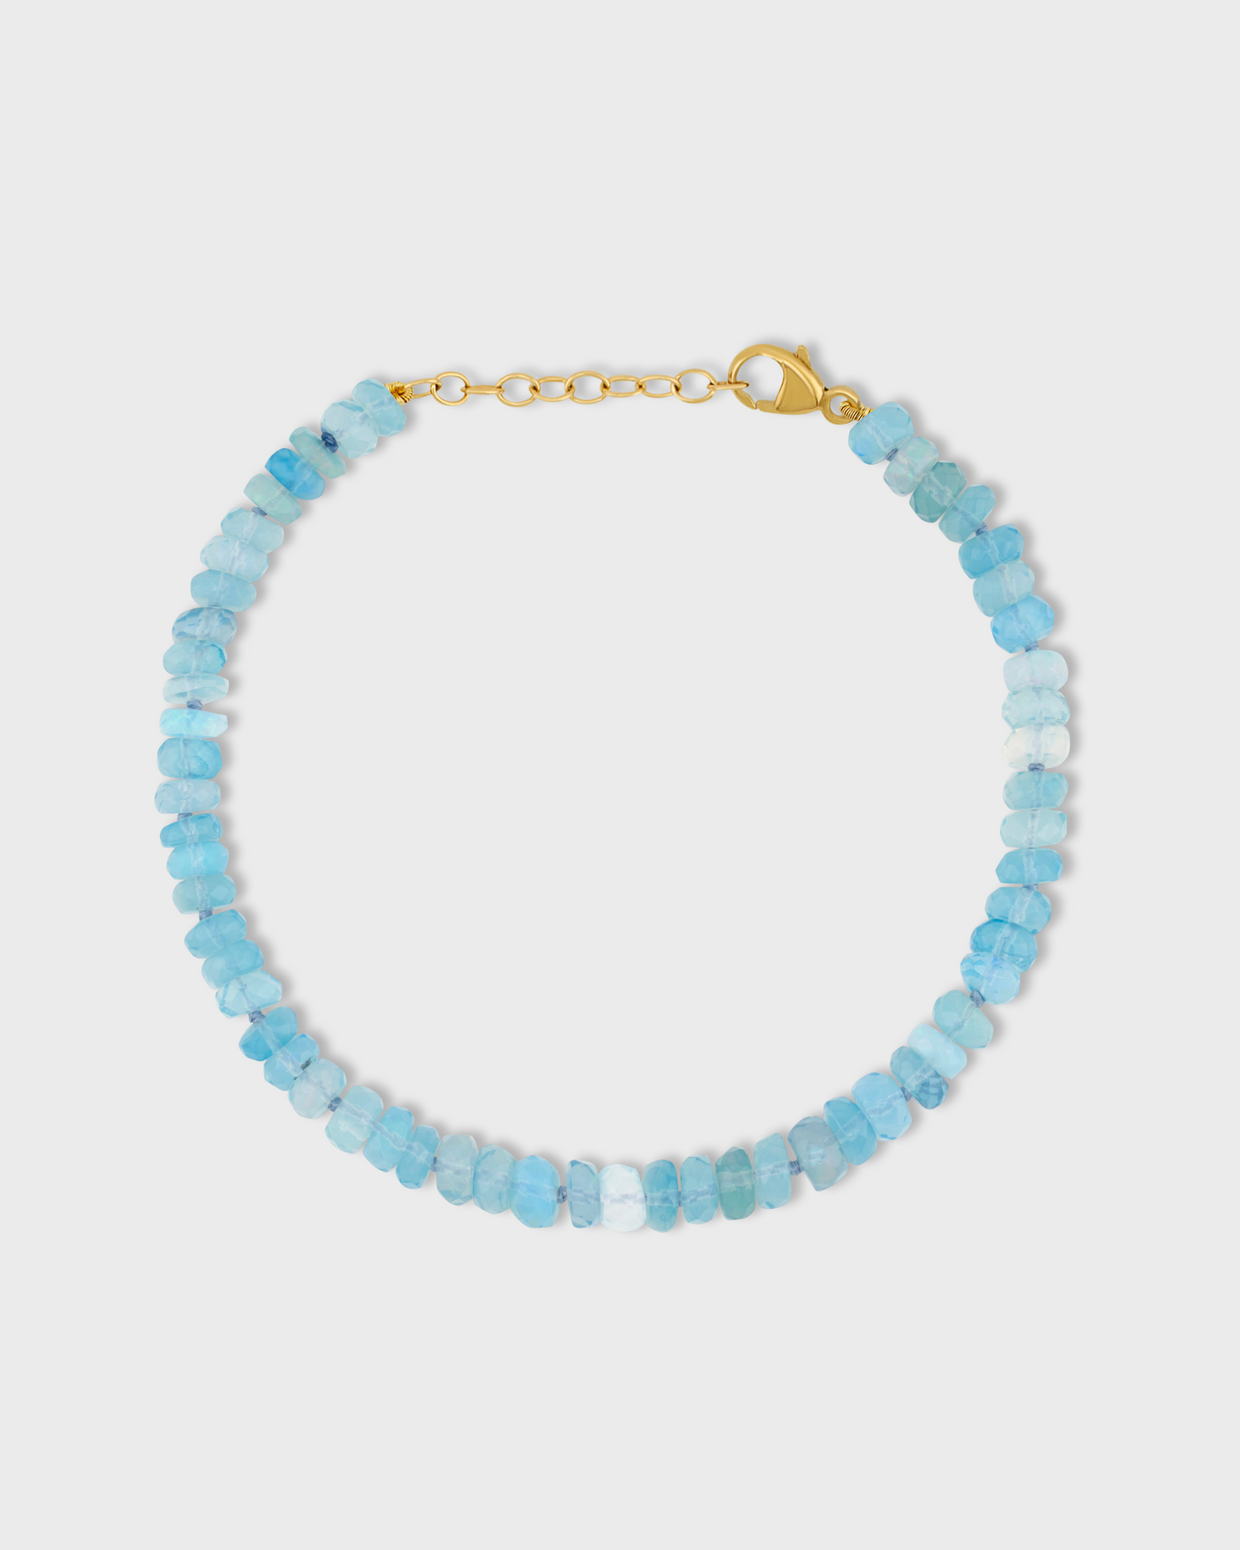 Soleil Blue Faceted Large Opal Bracelet